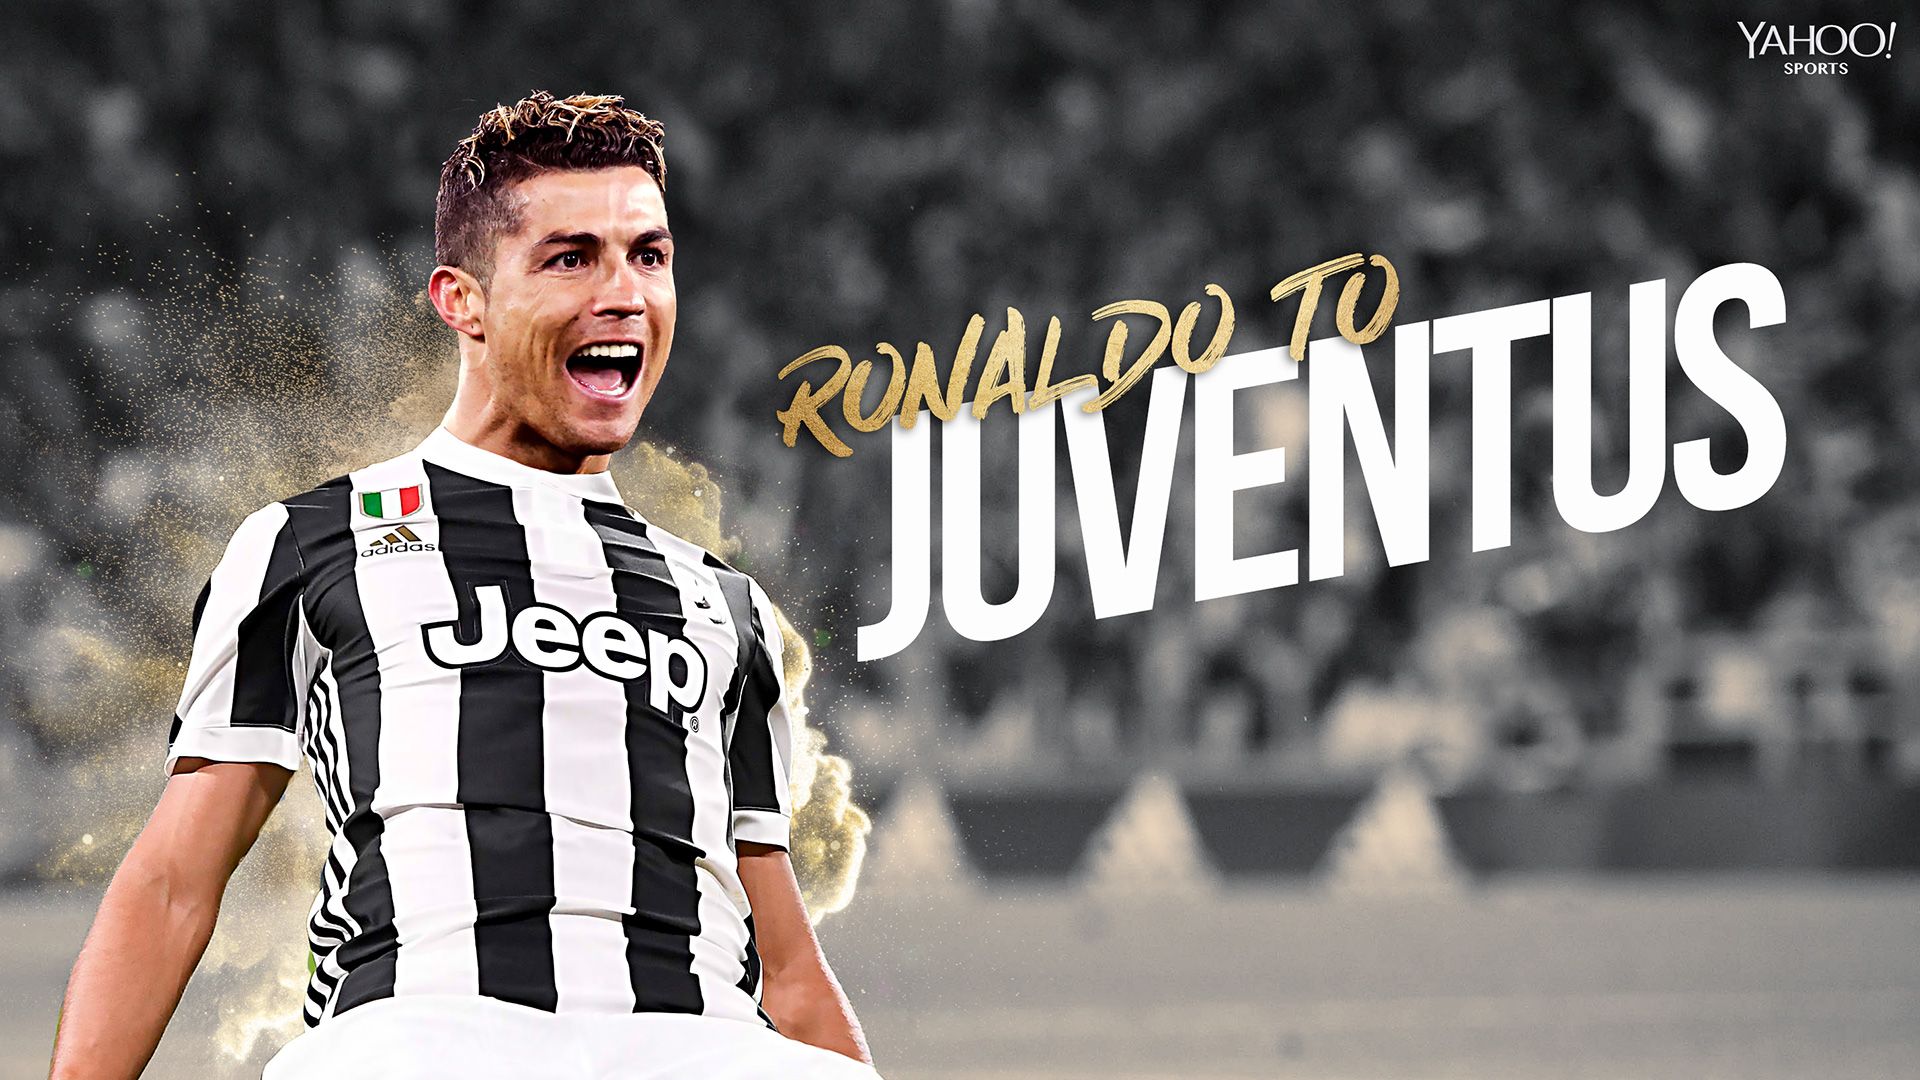 View Ronaldo Juventus Wallpaper 2021 Pictures